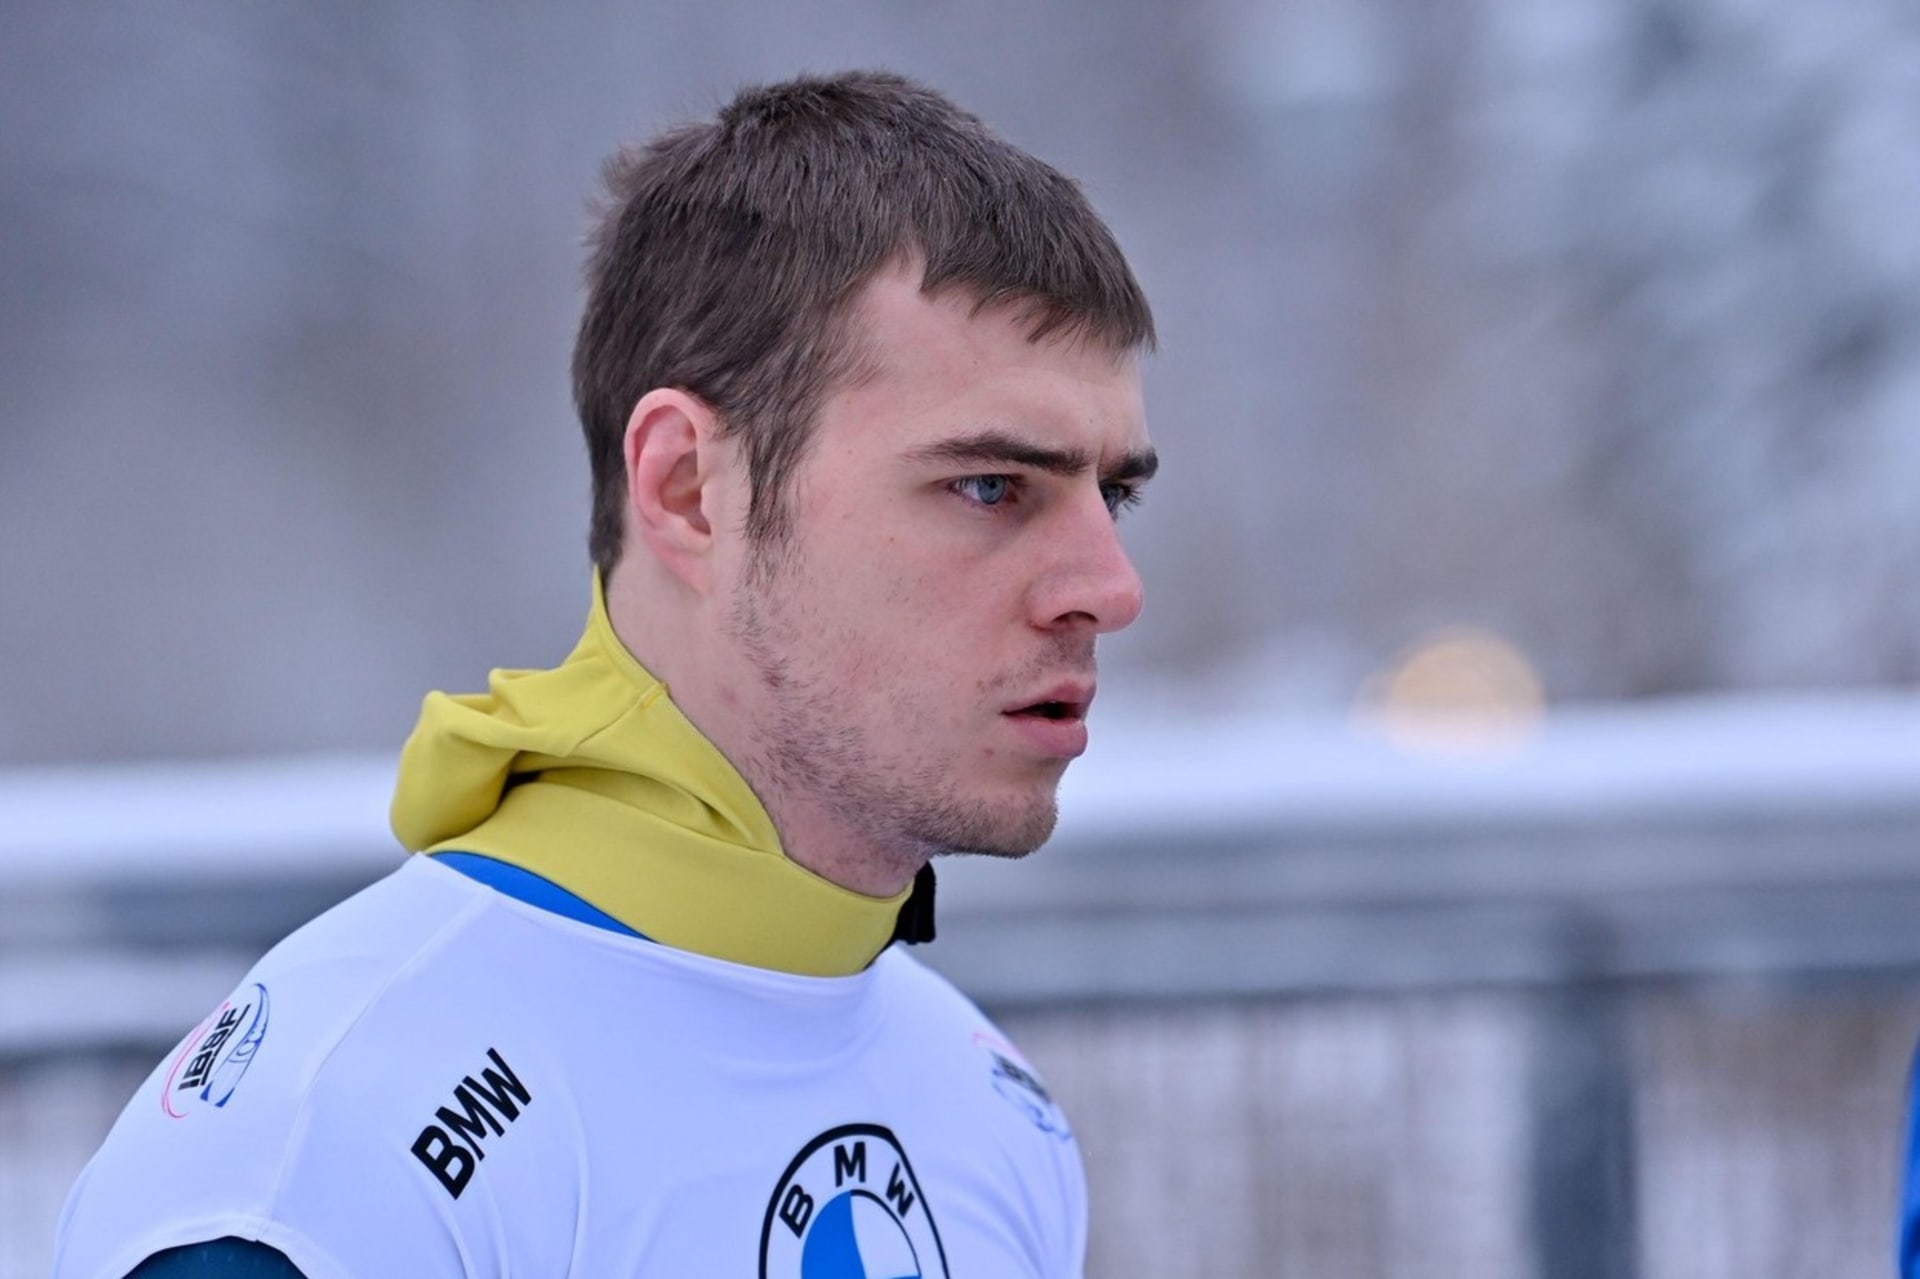 Heraskevyč skončil na olympijských hrách na 18. místě.